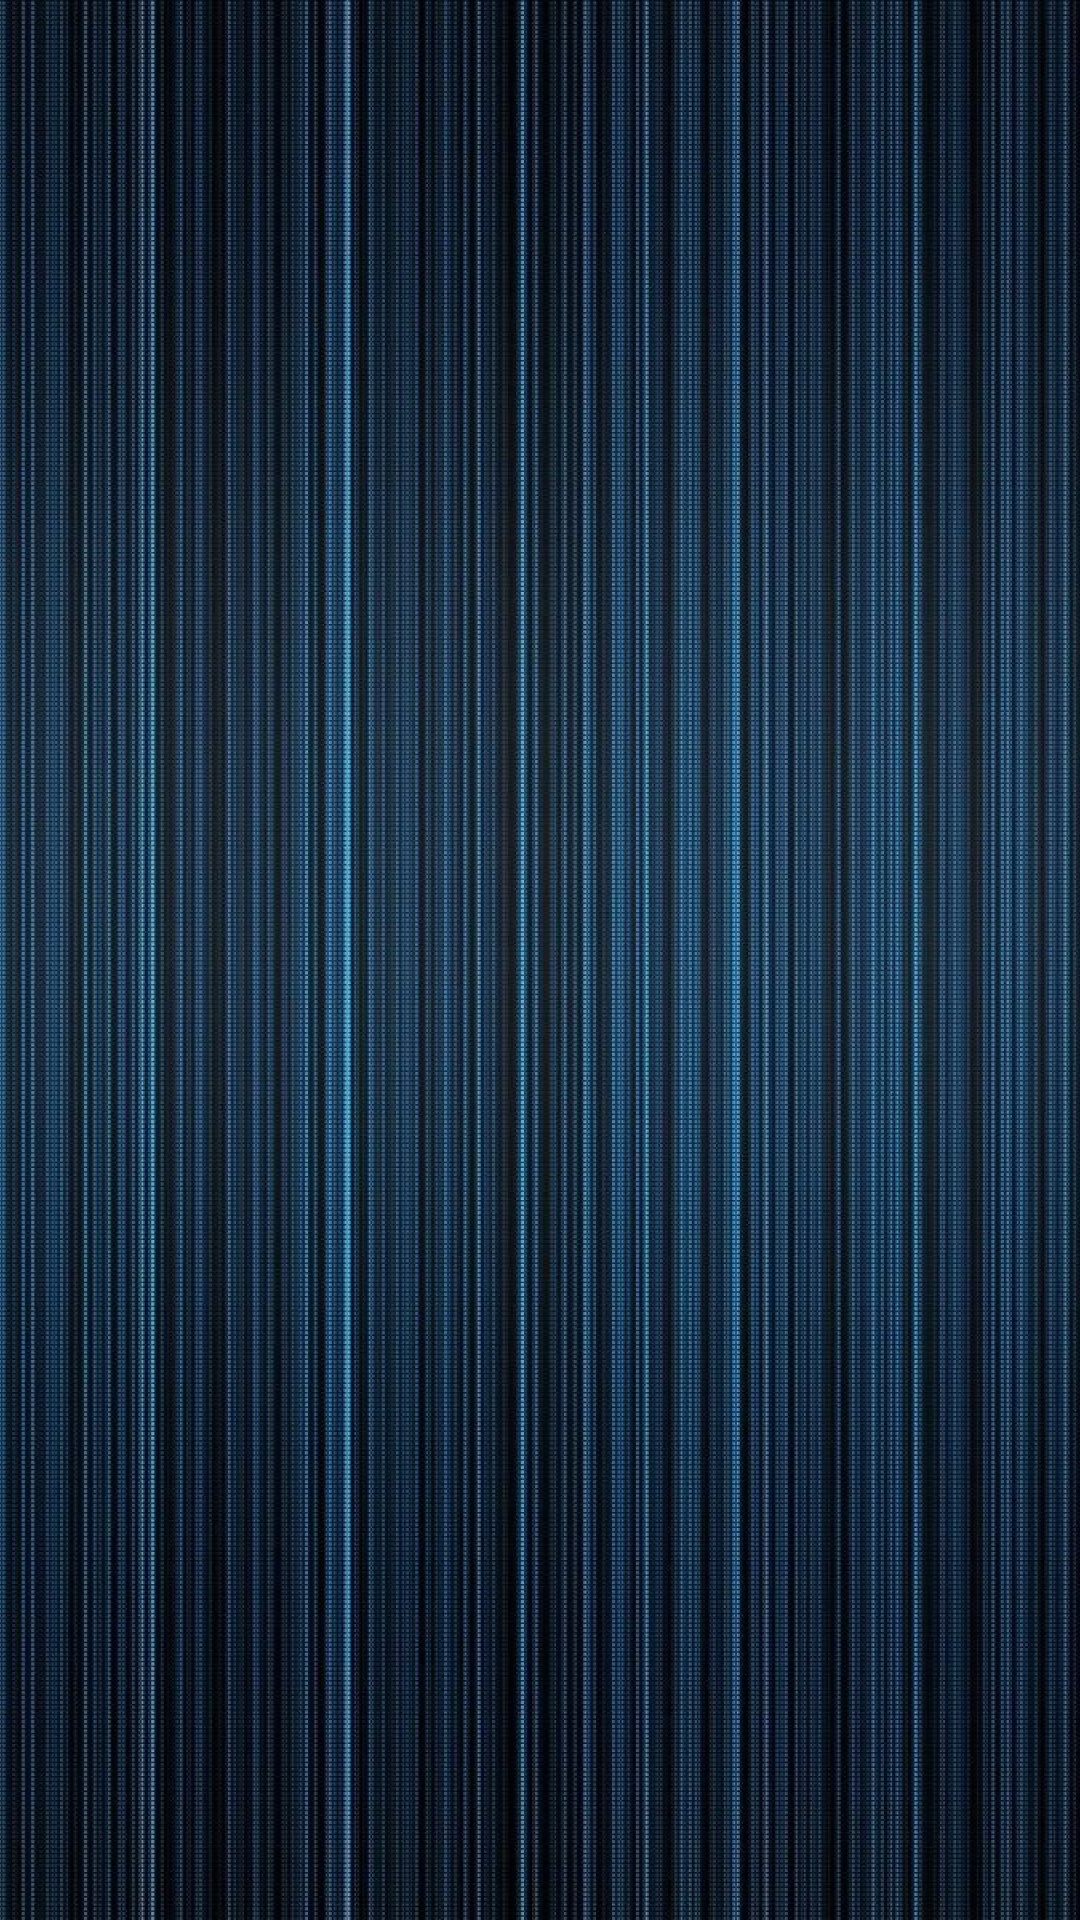 Blue stripe texture corrugated material screenshot #1 1080x1920